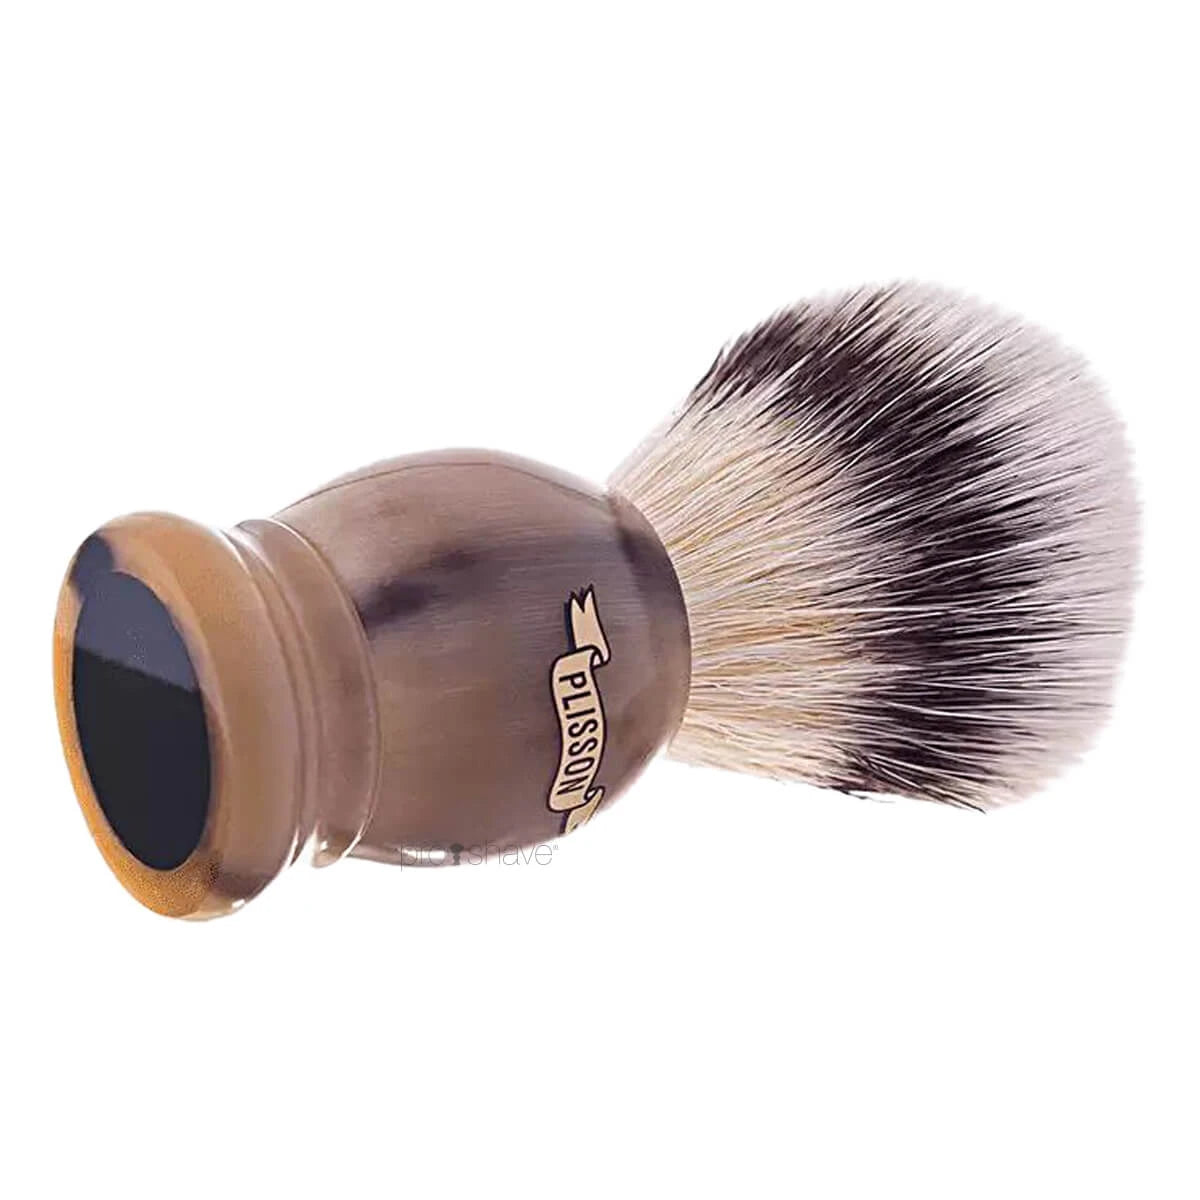 Plisson Shaving Brush, High Mountain White Fibre & Genuine Horn- Size 12